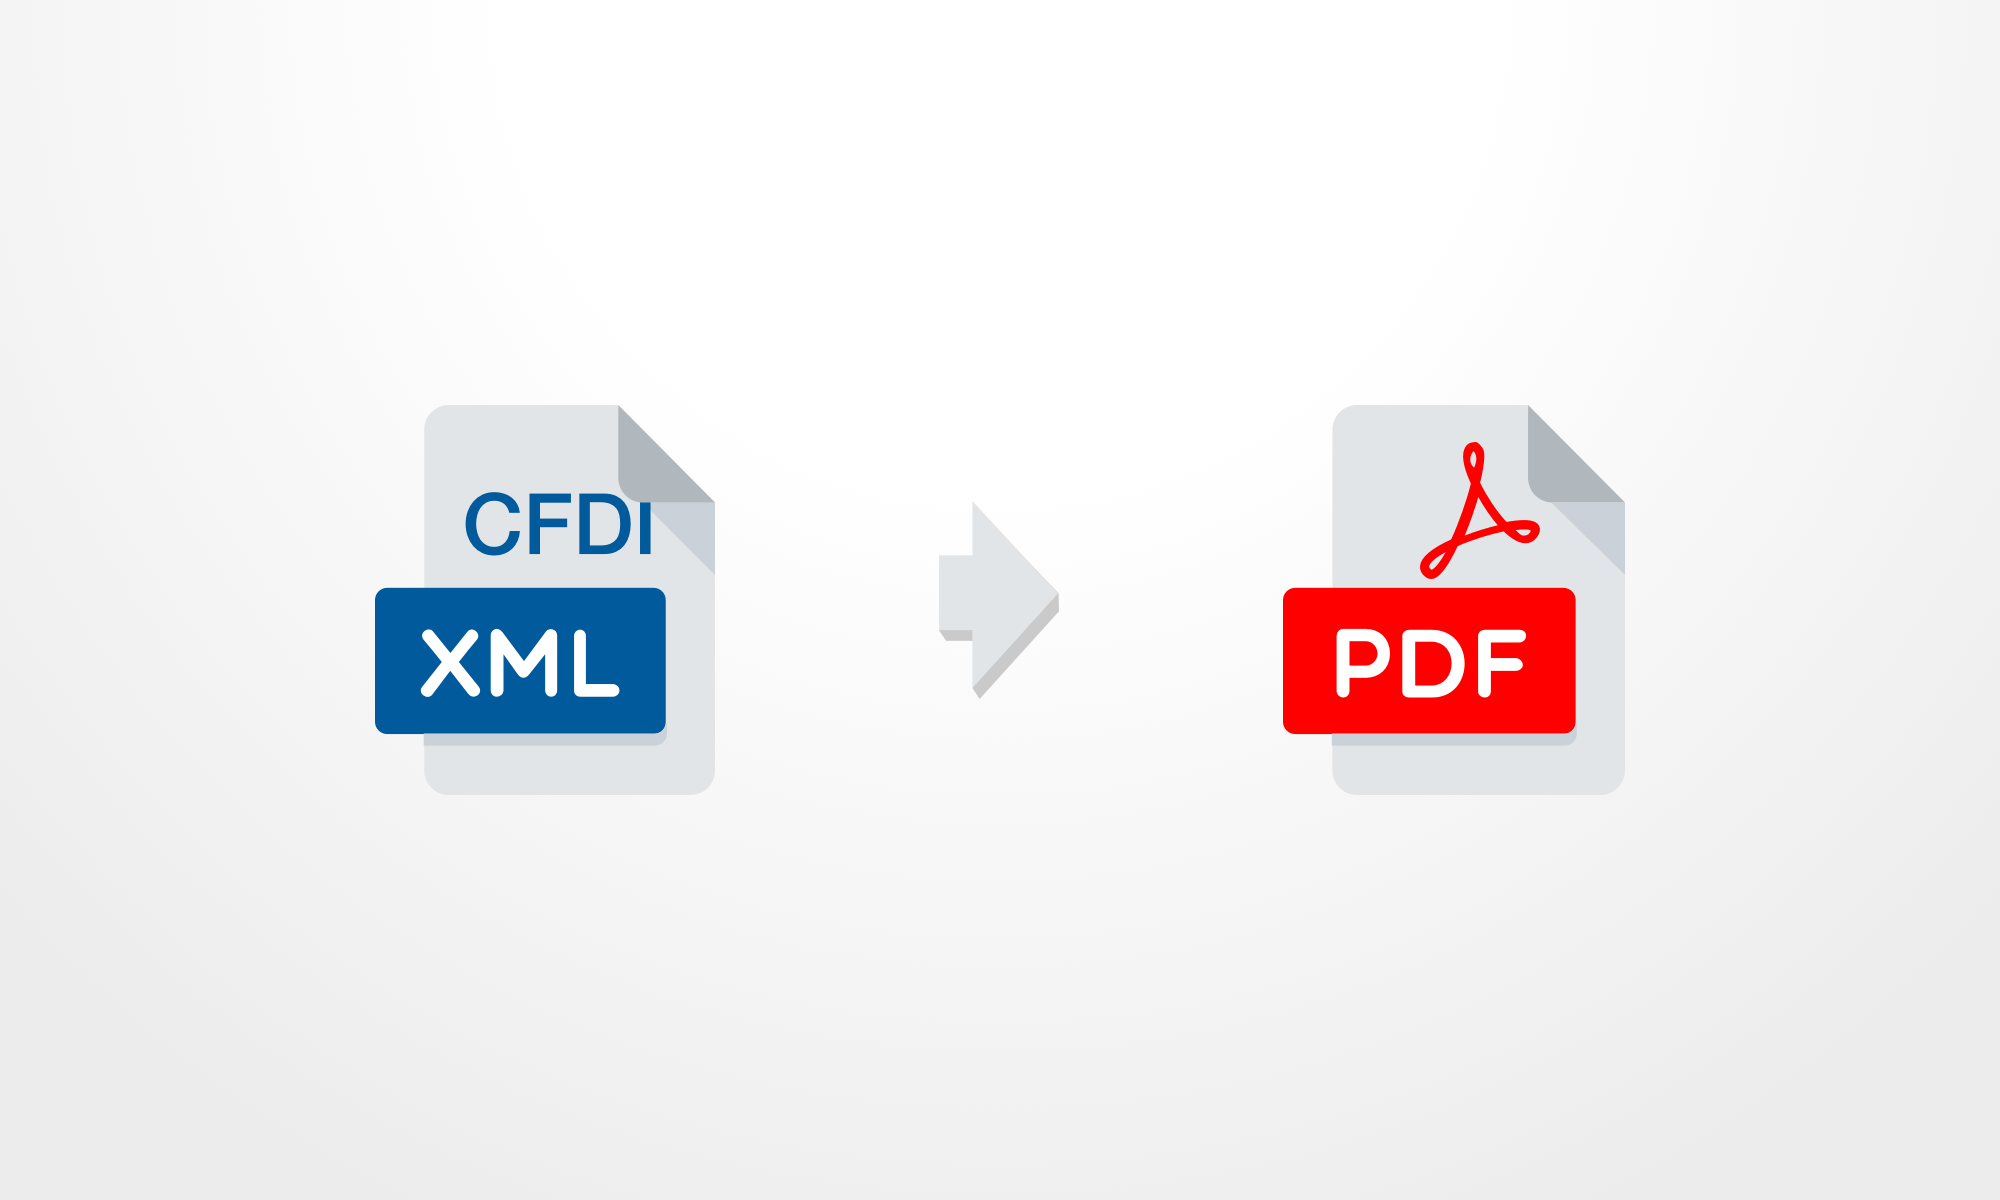 ¿Cómo convertir CFDI a PDF?